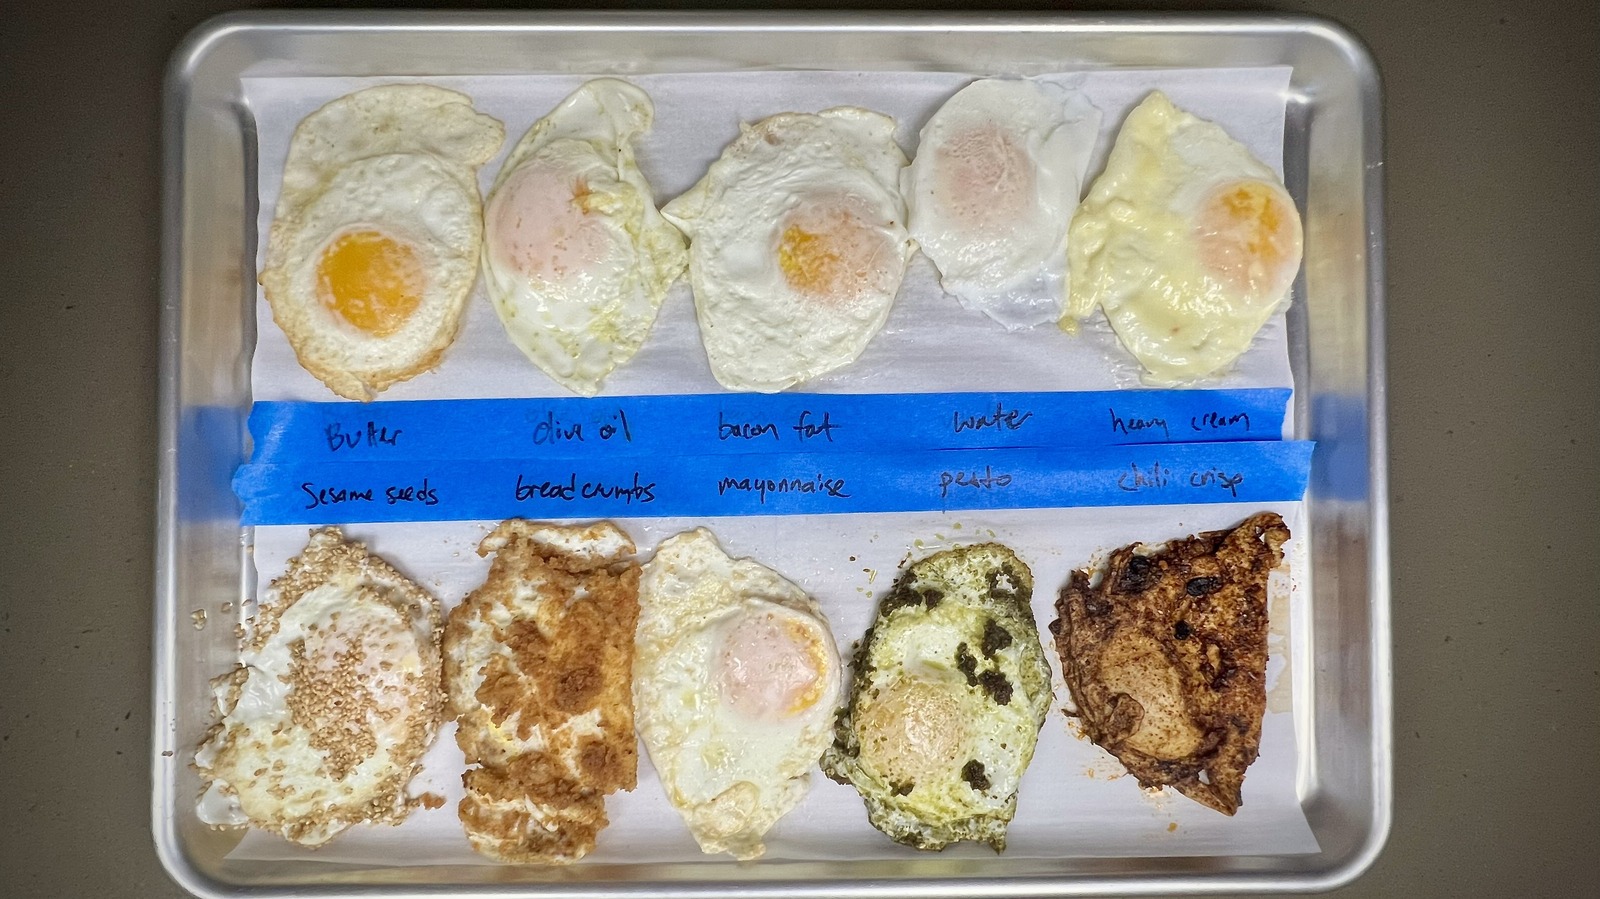 Zuni Cafe's Eggs Fried in Breadcrumbs